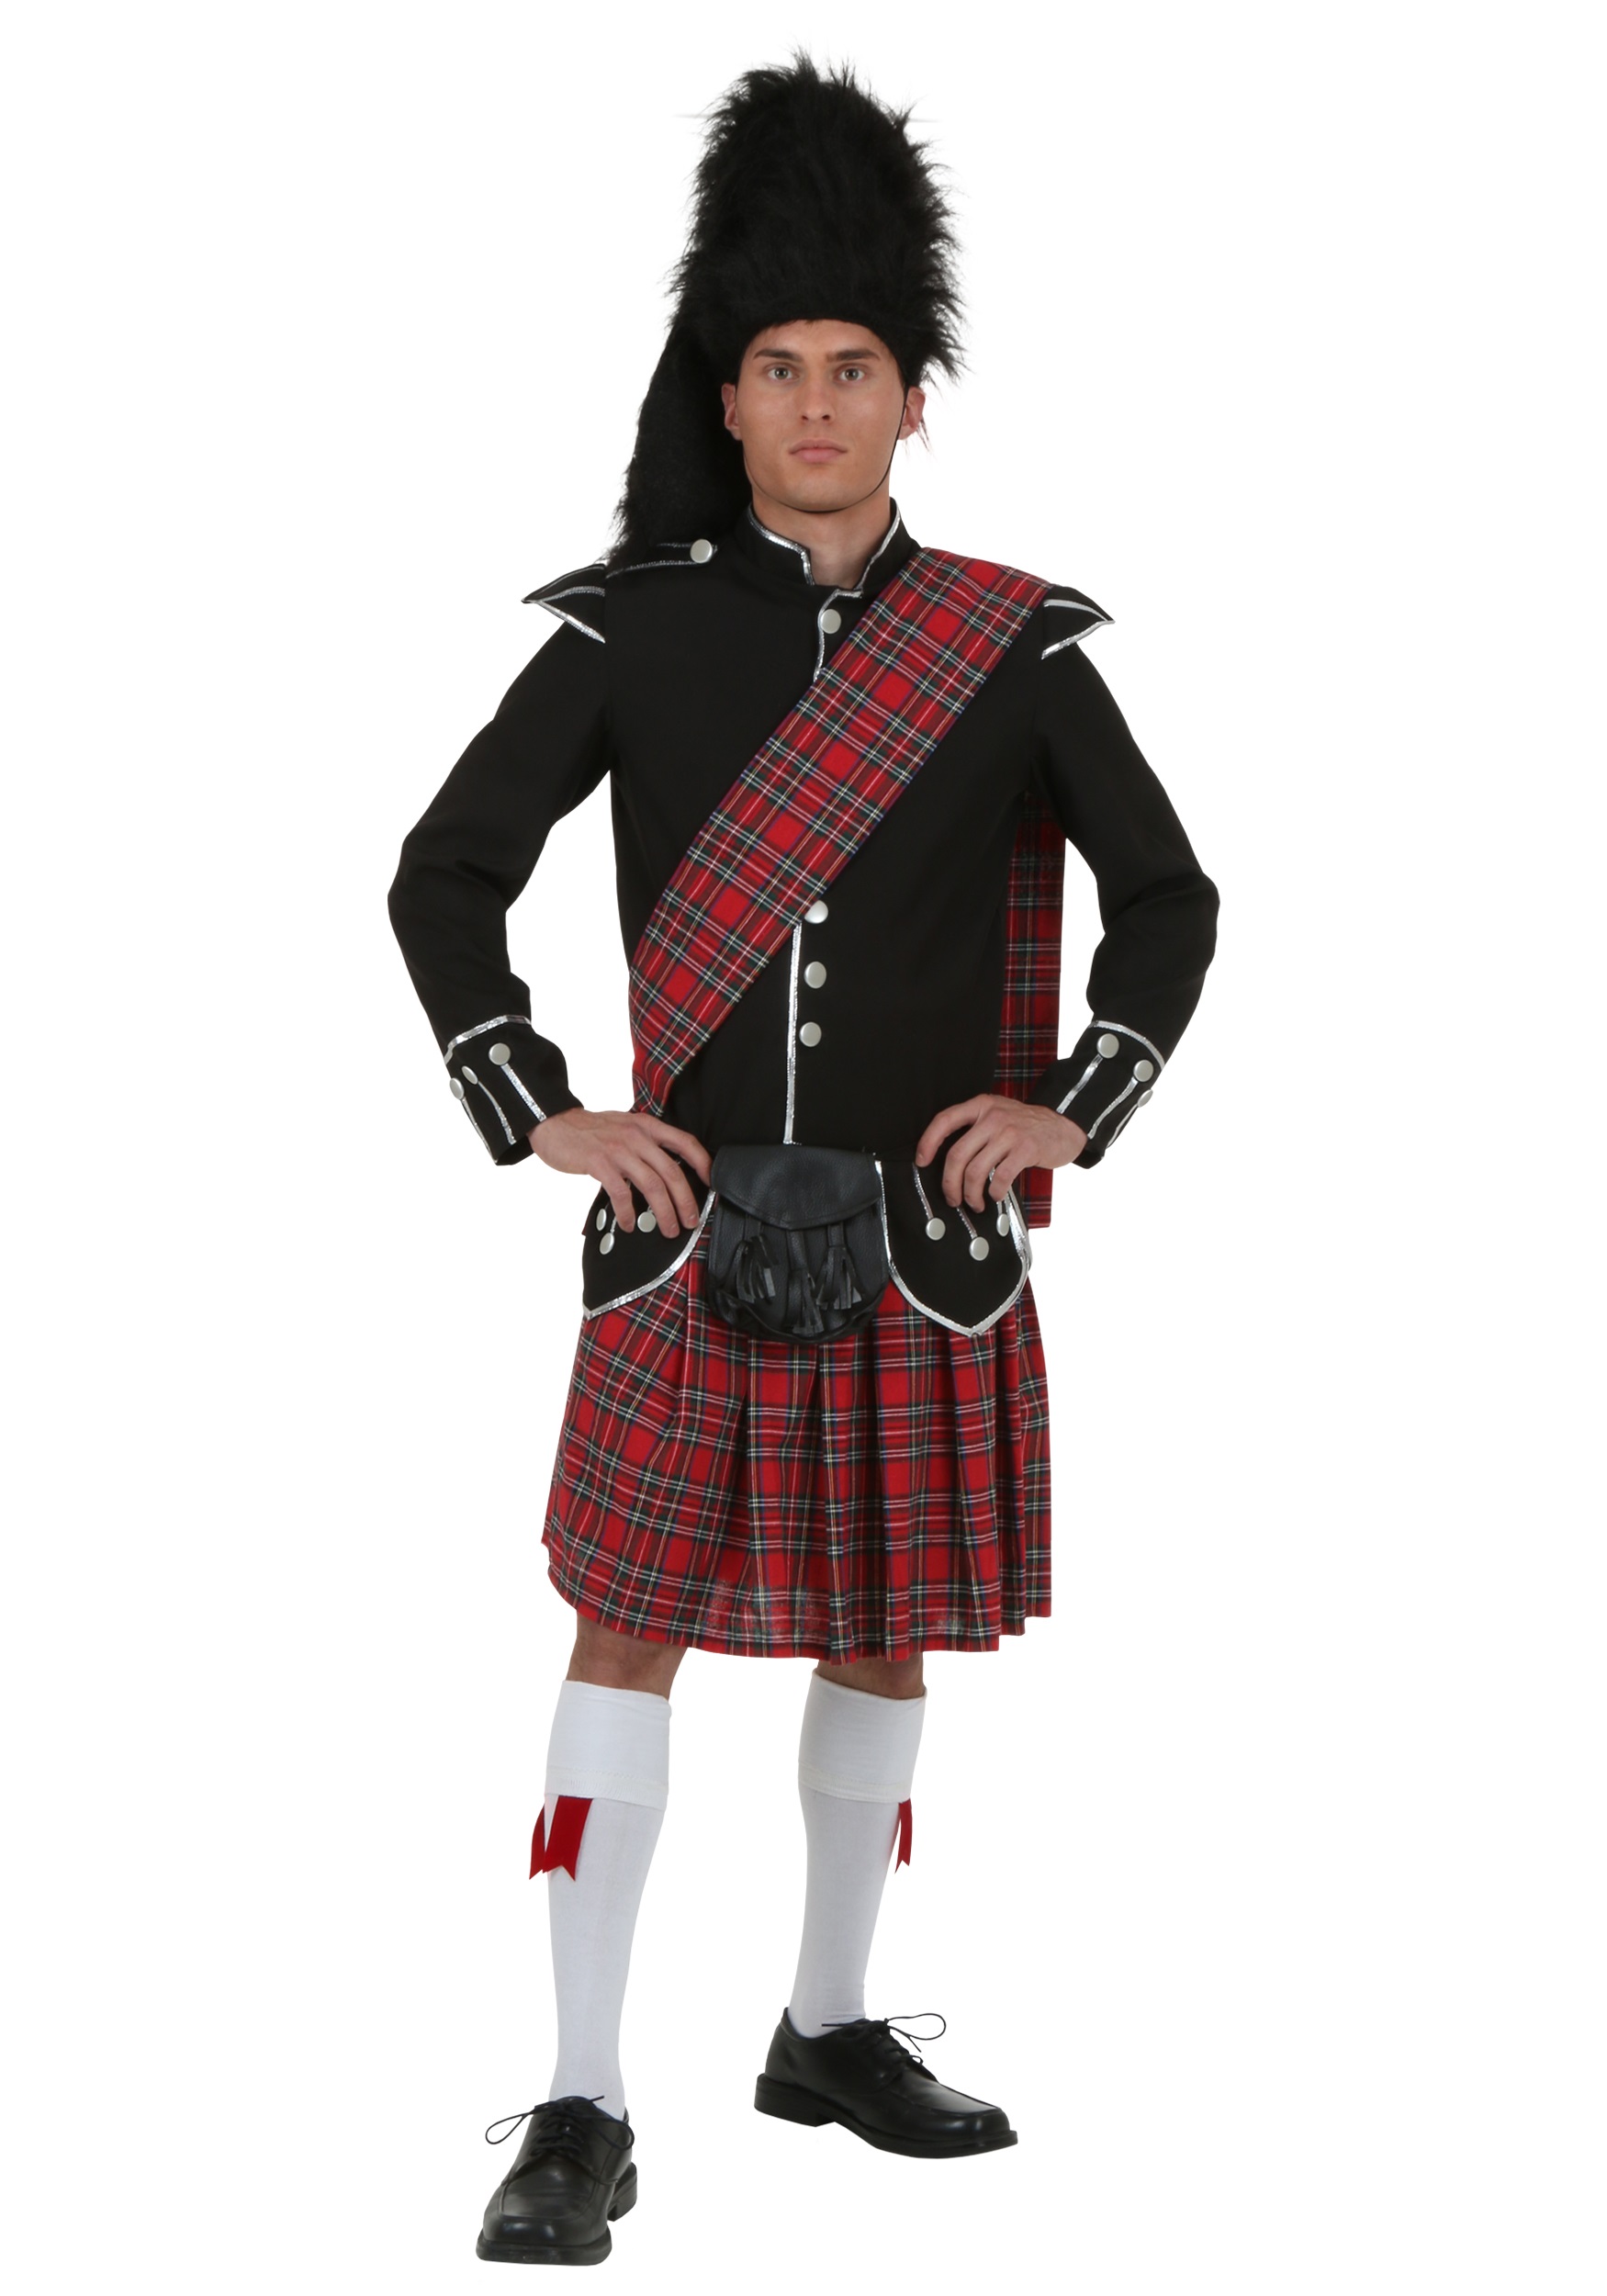 Personalised Quality Costume Kilt Dress Highland Irish Scottish Dance Bag 